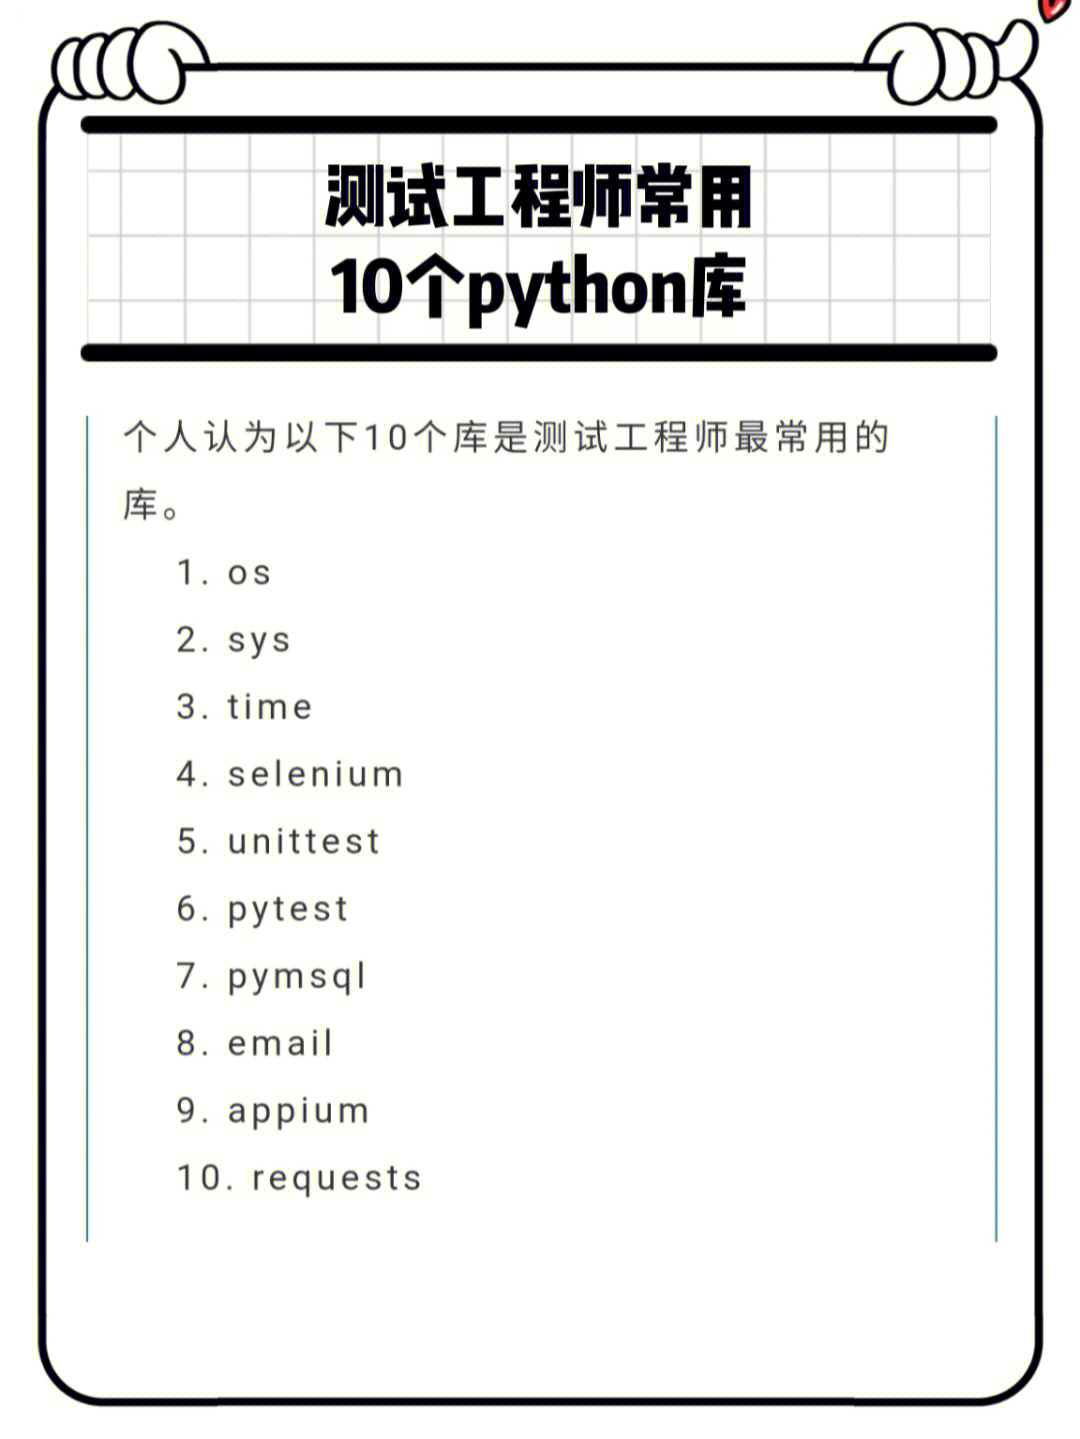 测试工程师常用的10个python库